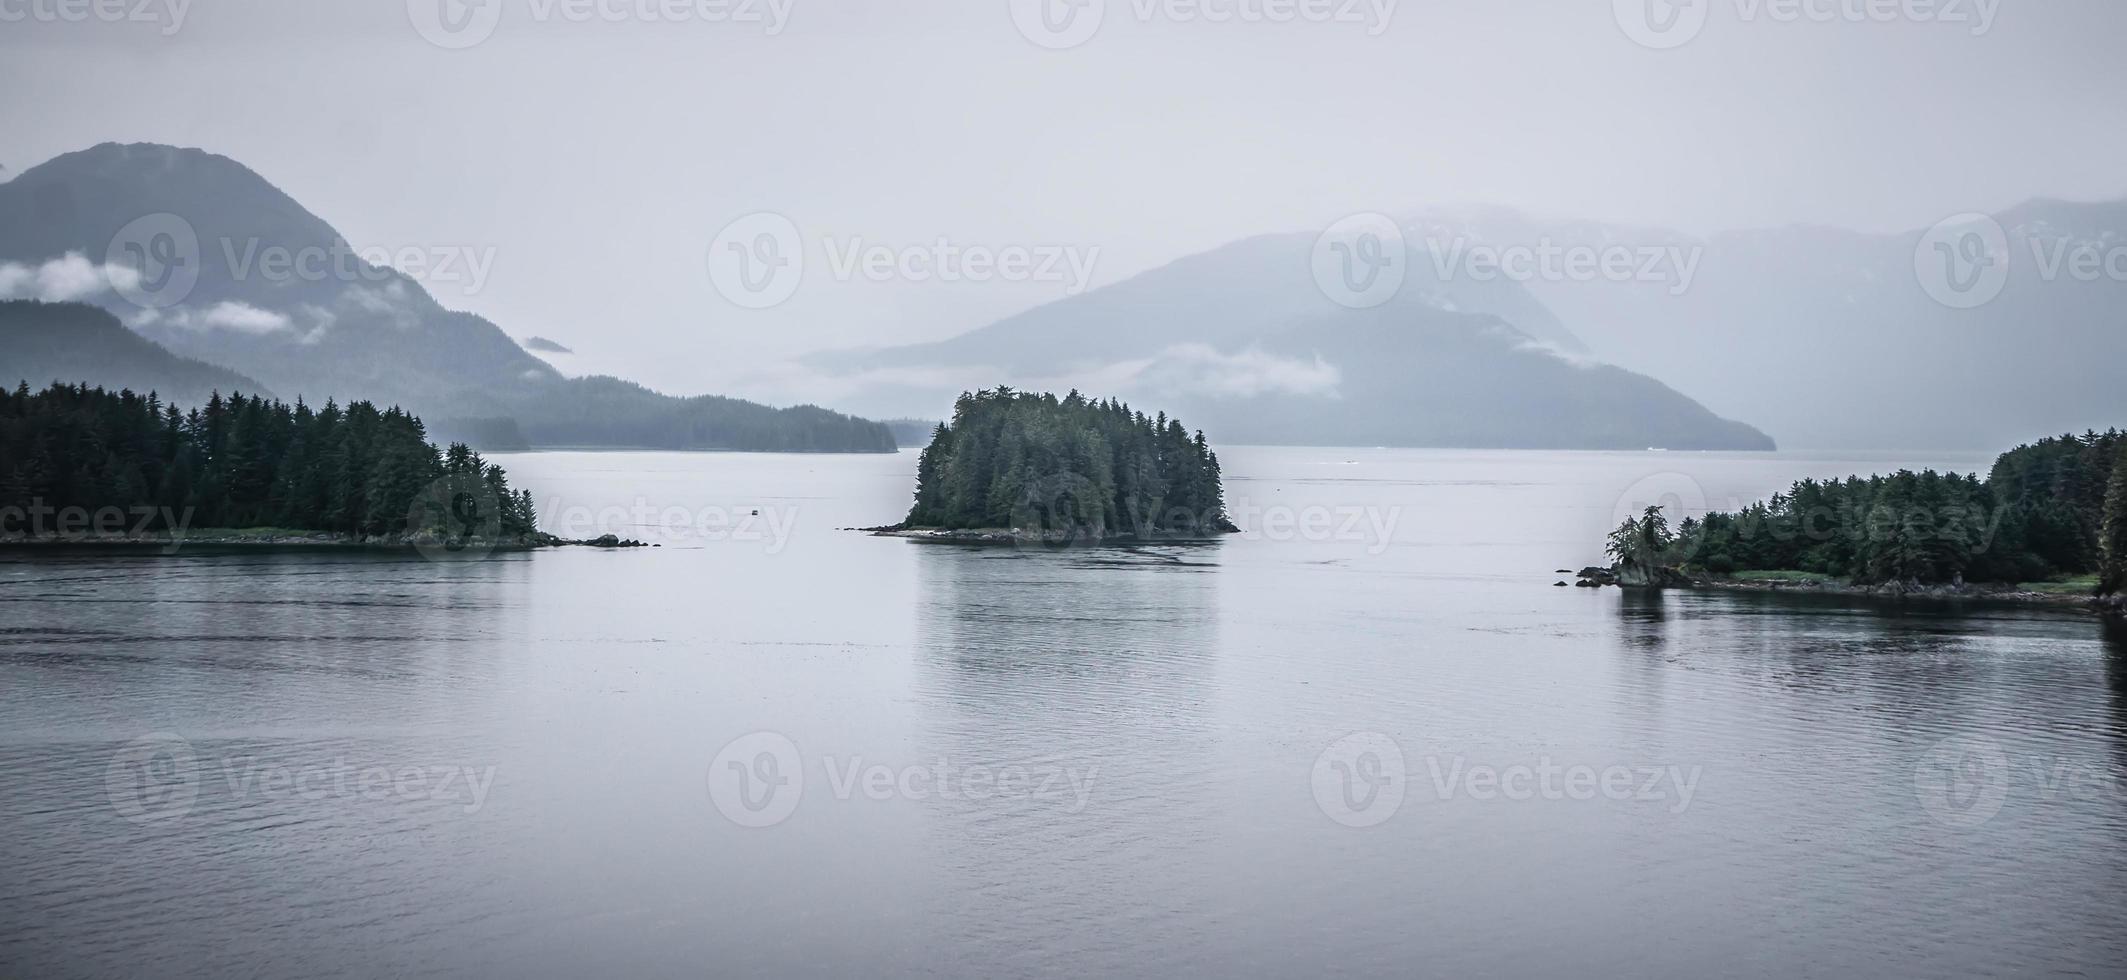 nature de l'alaska et chaîne de montagnes avec paysage marin en juin photo